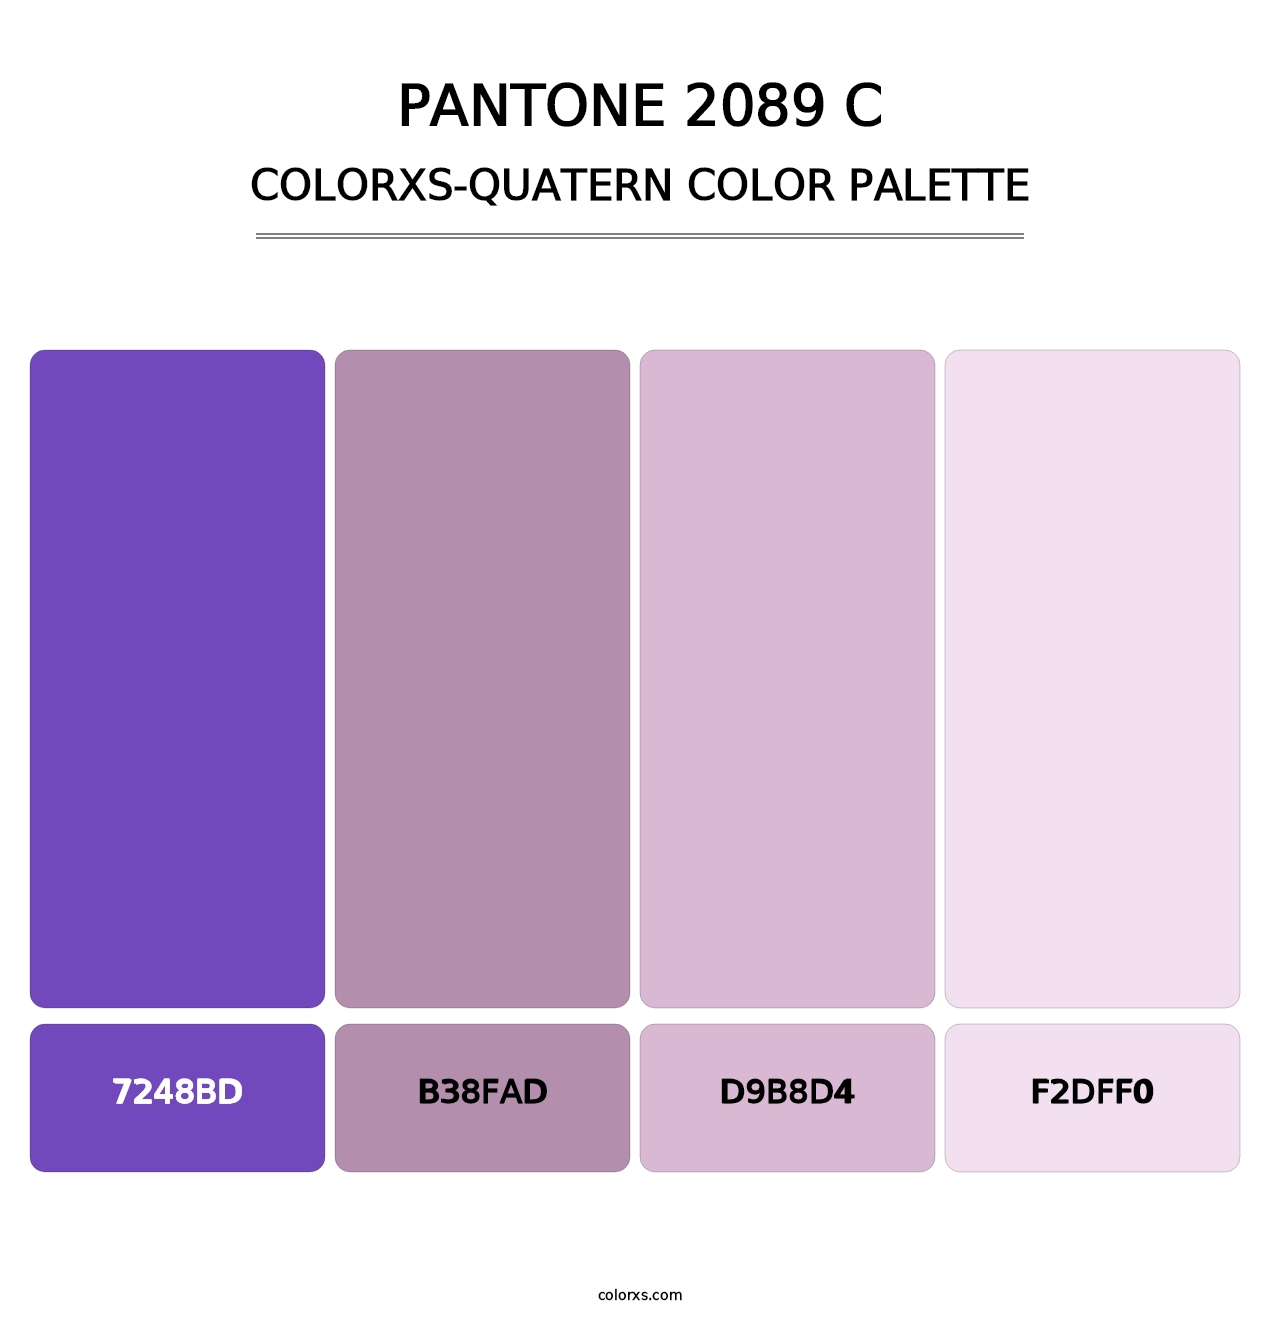 PANTONE 2089 C - Colorxs Quatern Palette